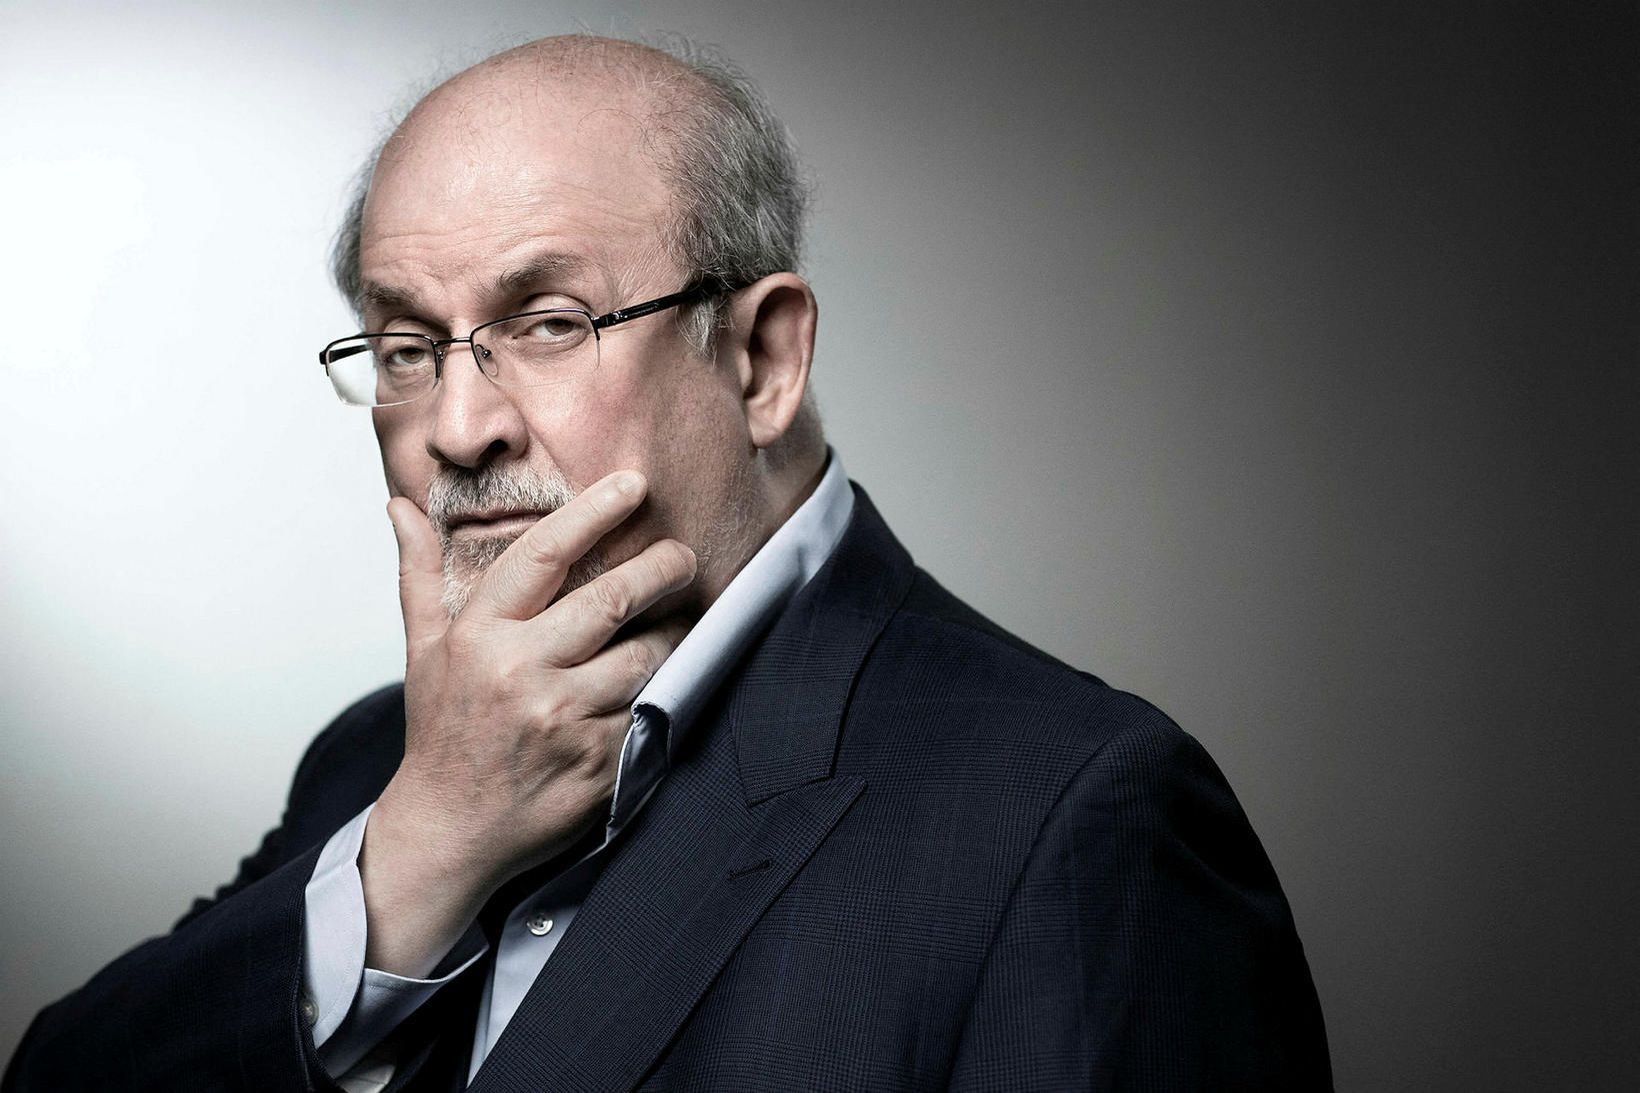 Indversk-breski rithöfundurinn Salman Rushdie varð gríðarlega umdeildur í kjölfar útgáfu …